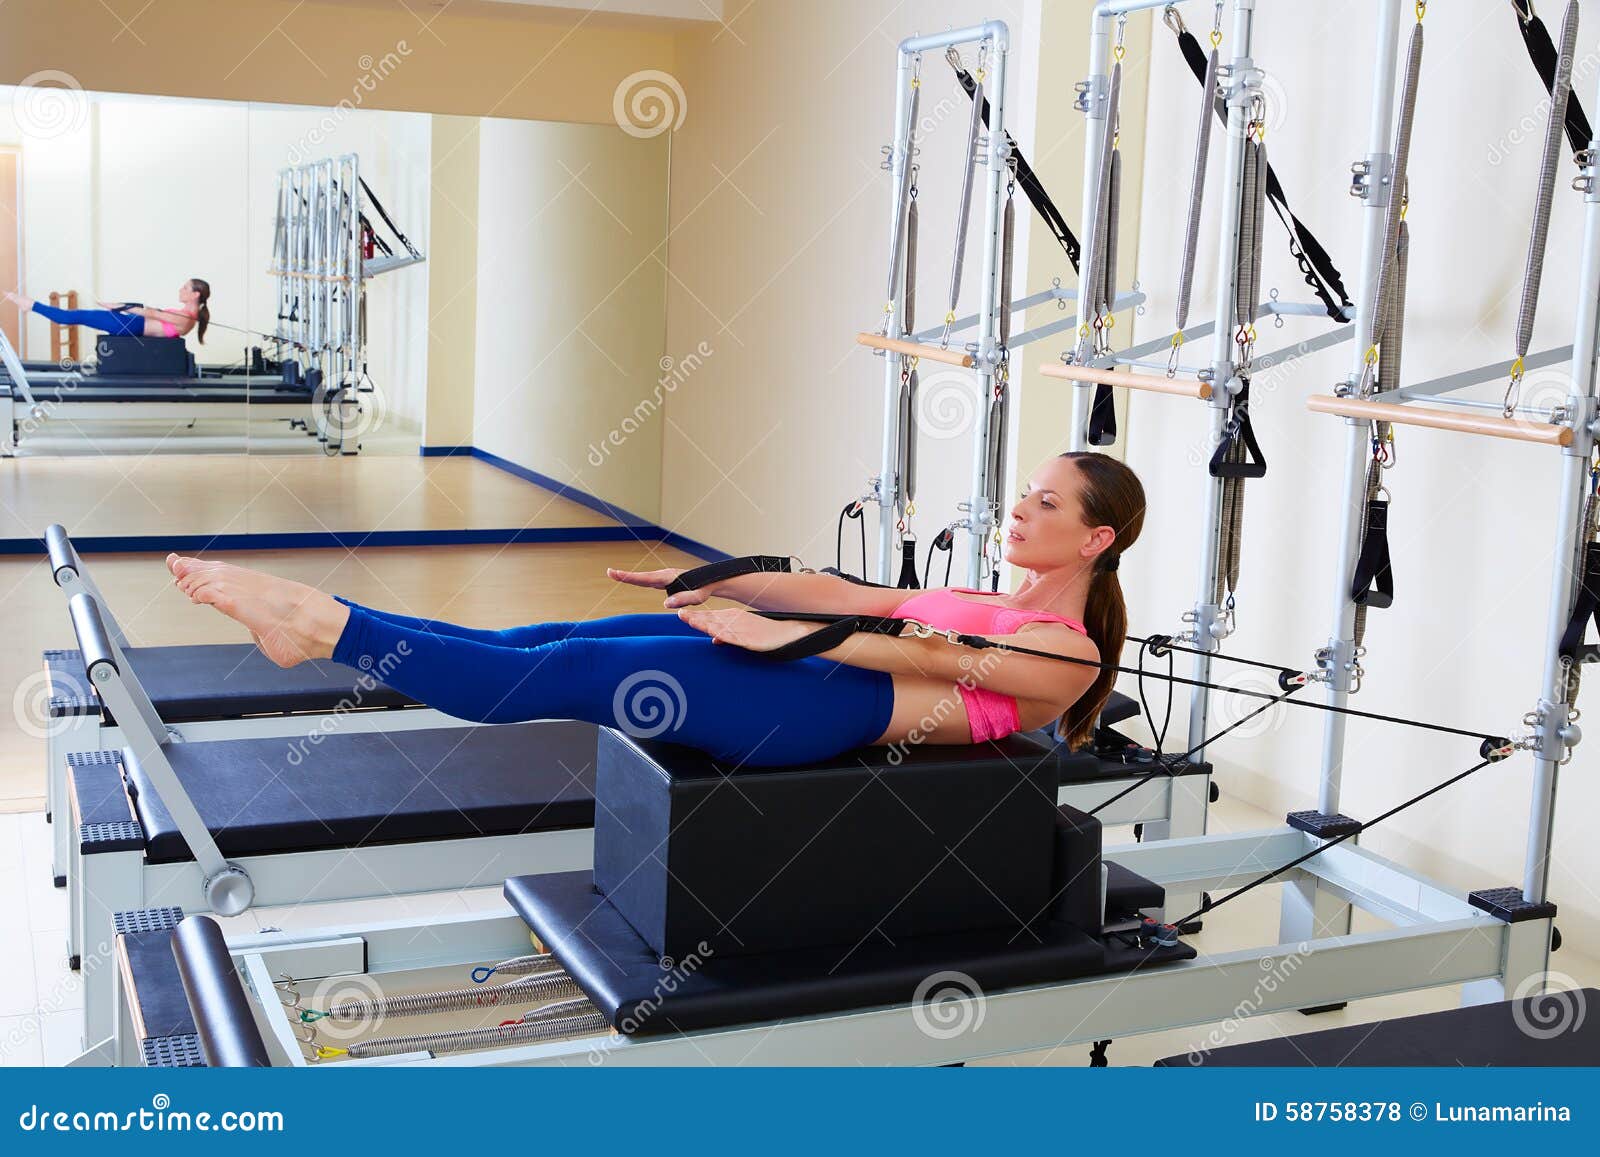 pilates reformer woman back stroke exercise